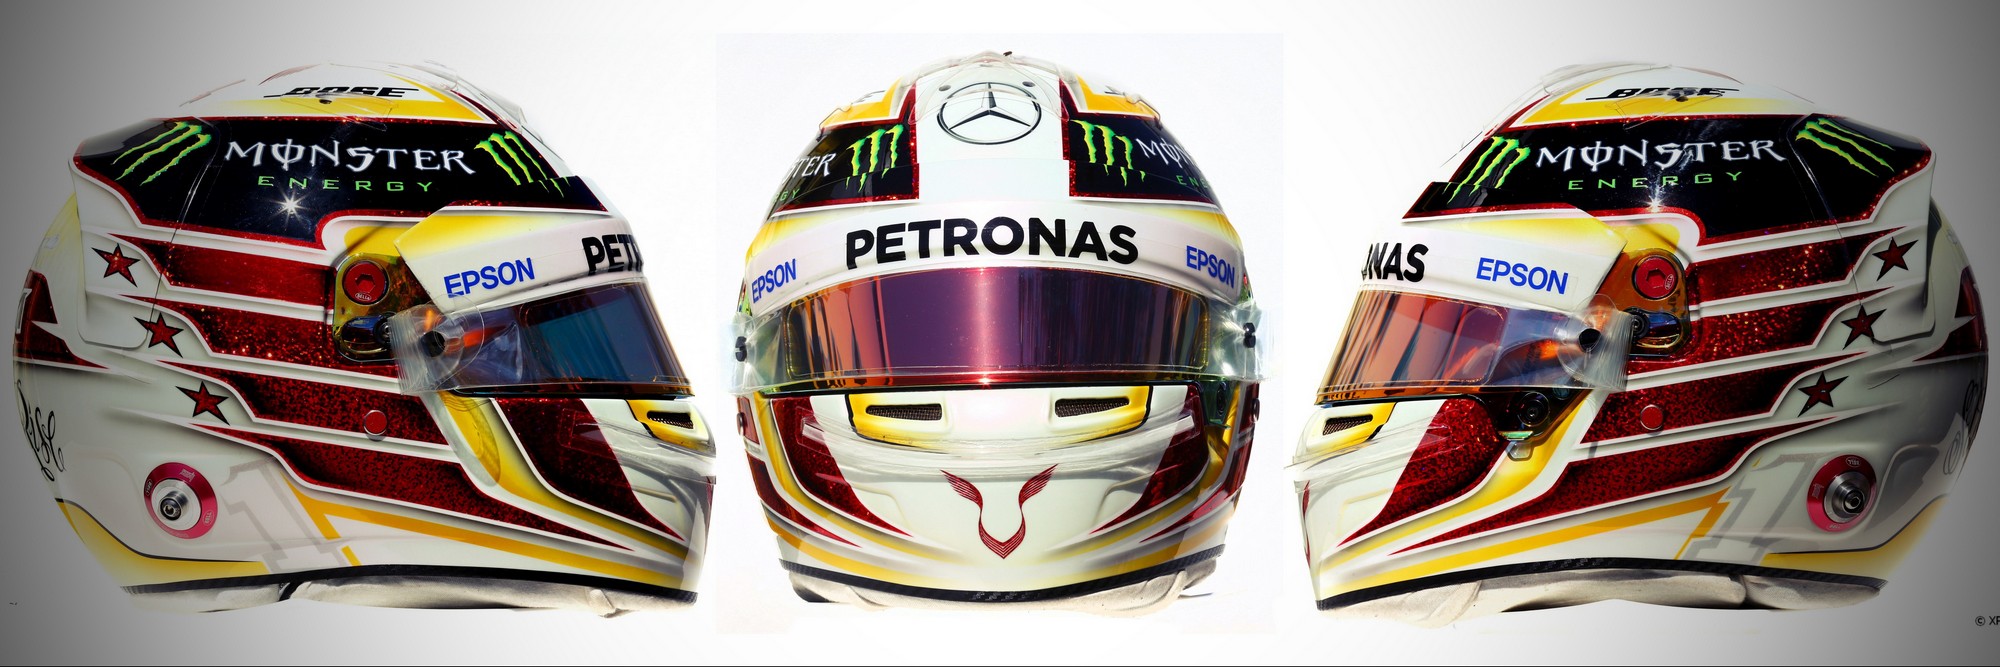 Шлем Льюиса Хэмилтона на сезон 2016 года | 2016 helmet of Lewis Hamilton